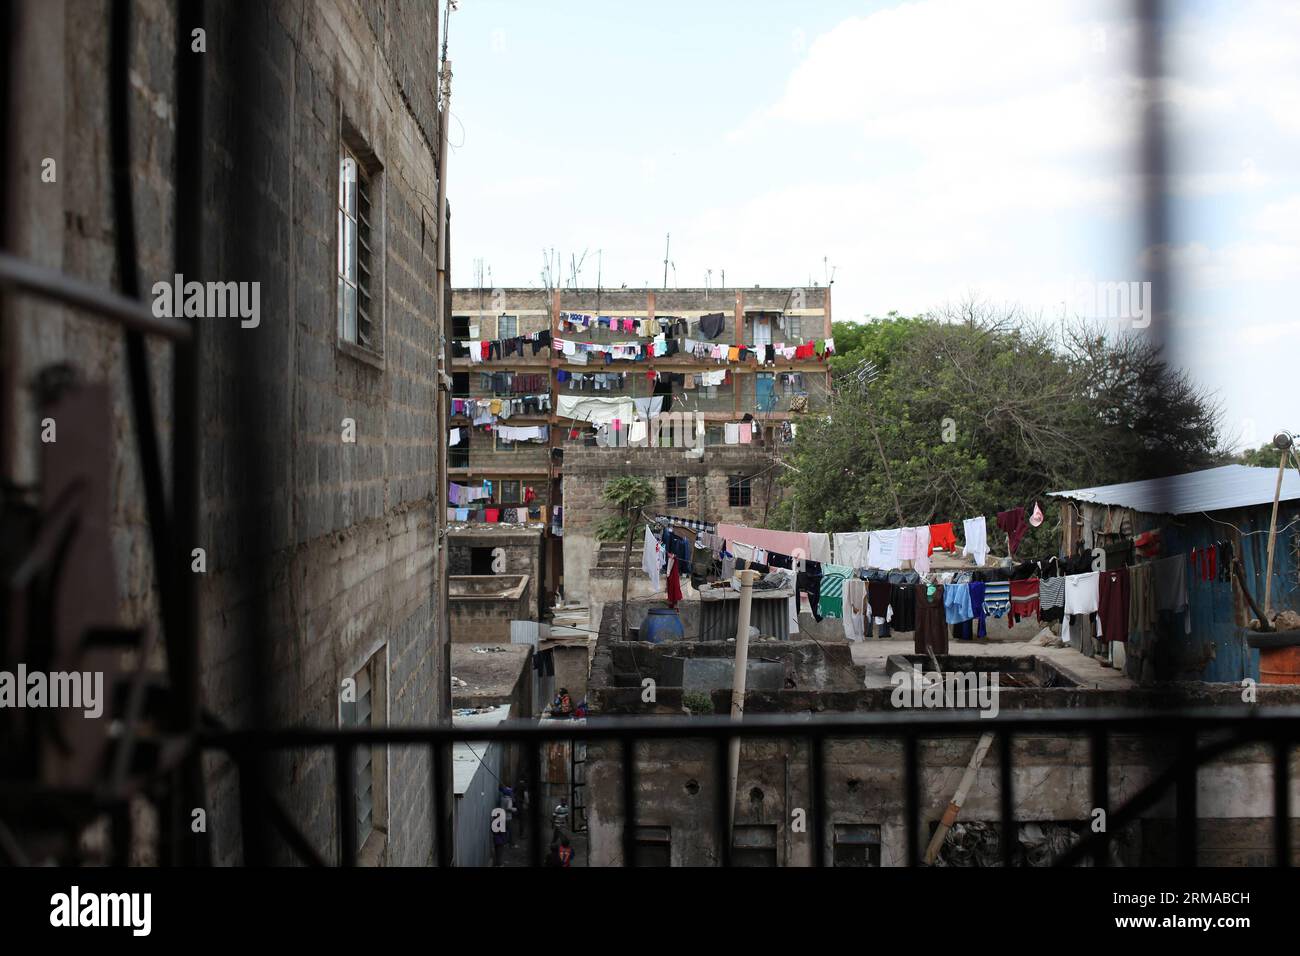 NAIROBI, 29. Juni 2014 -- das Foto vom 29. Juni 2014 zeigt den Blick vor einer Boxschule in Korogocho Slum, Nairobi, der Hauptstadt Kenias. Die Boxschule mit mehr als einem Hundred Schüler im Alter von 4 bis 20 Jahren wird von der NGO Fight for Peace gegründet. Die Schule nutzt Boxen und Kampfkunst in Verbindung mit Bildung, um das Potenzial junger Menschen zu nutzen und sie von Verbrechen und Gewalt fernzuhalten. Derzeit gibt es Dutzende solcher Boxschulen in den Slums von Nairobi, die von verschiedenen Organisationen gegründet wurden. (Xinhua/Zhou Xiaoxiong) (dzl) KENIA-NAIROBI-SLUMS-BOXSCHULE PUBLICATIONxNOTxINxCHN Stockfoto